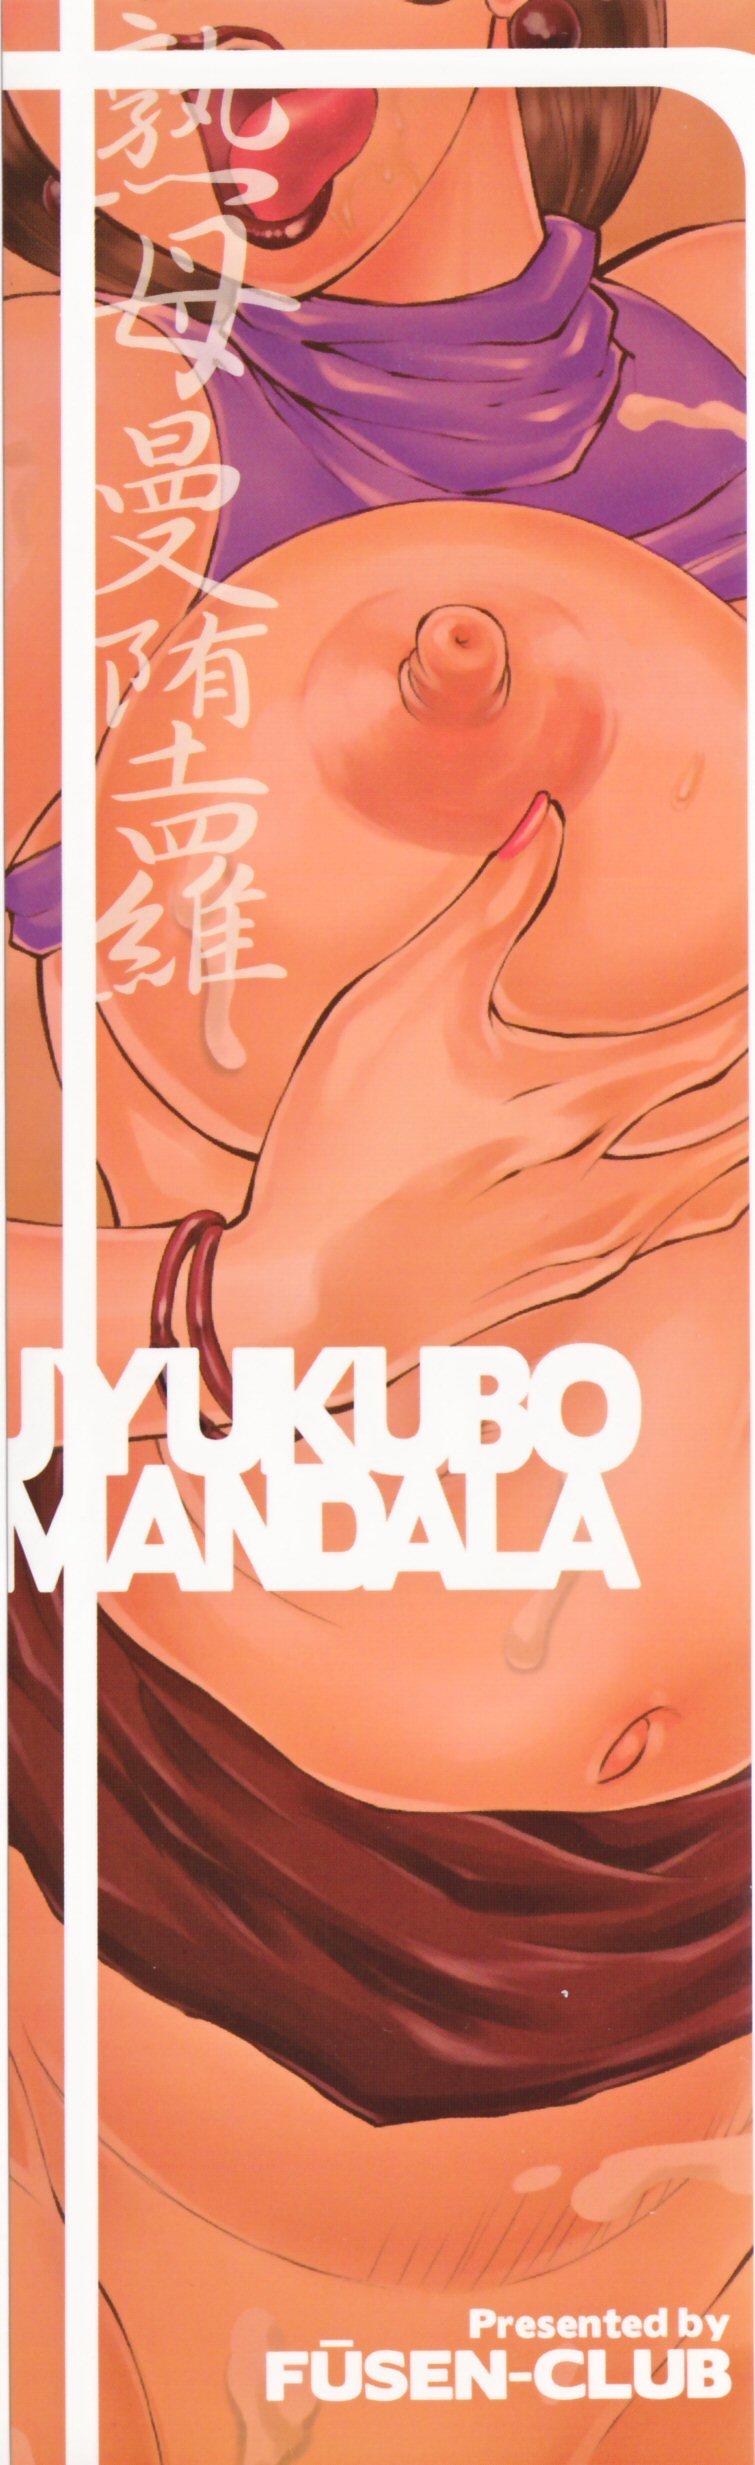 Jyukubo Mandala 3